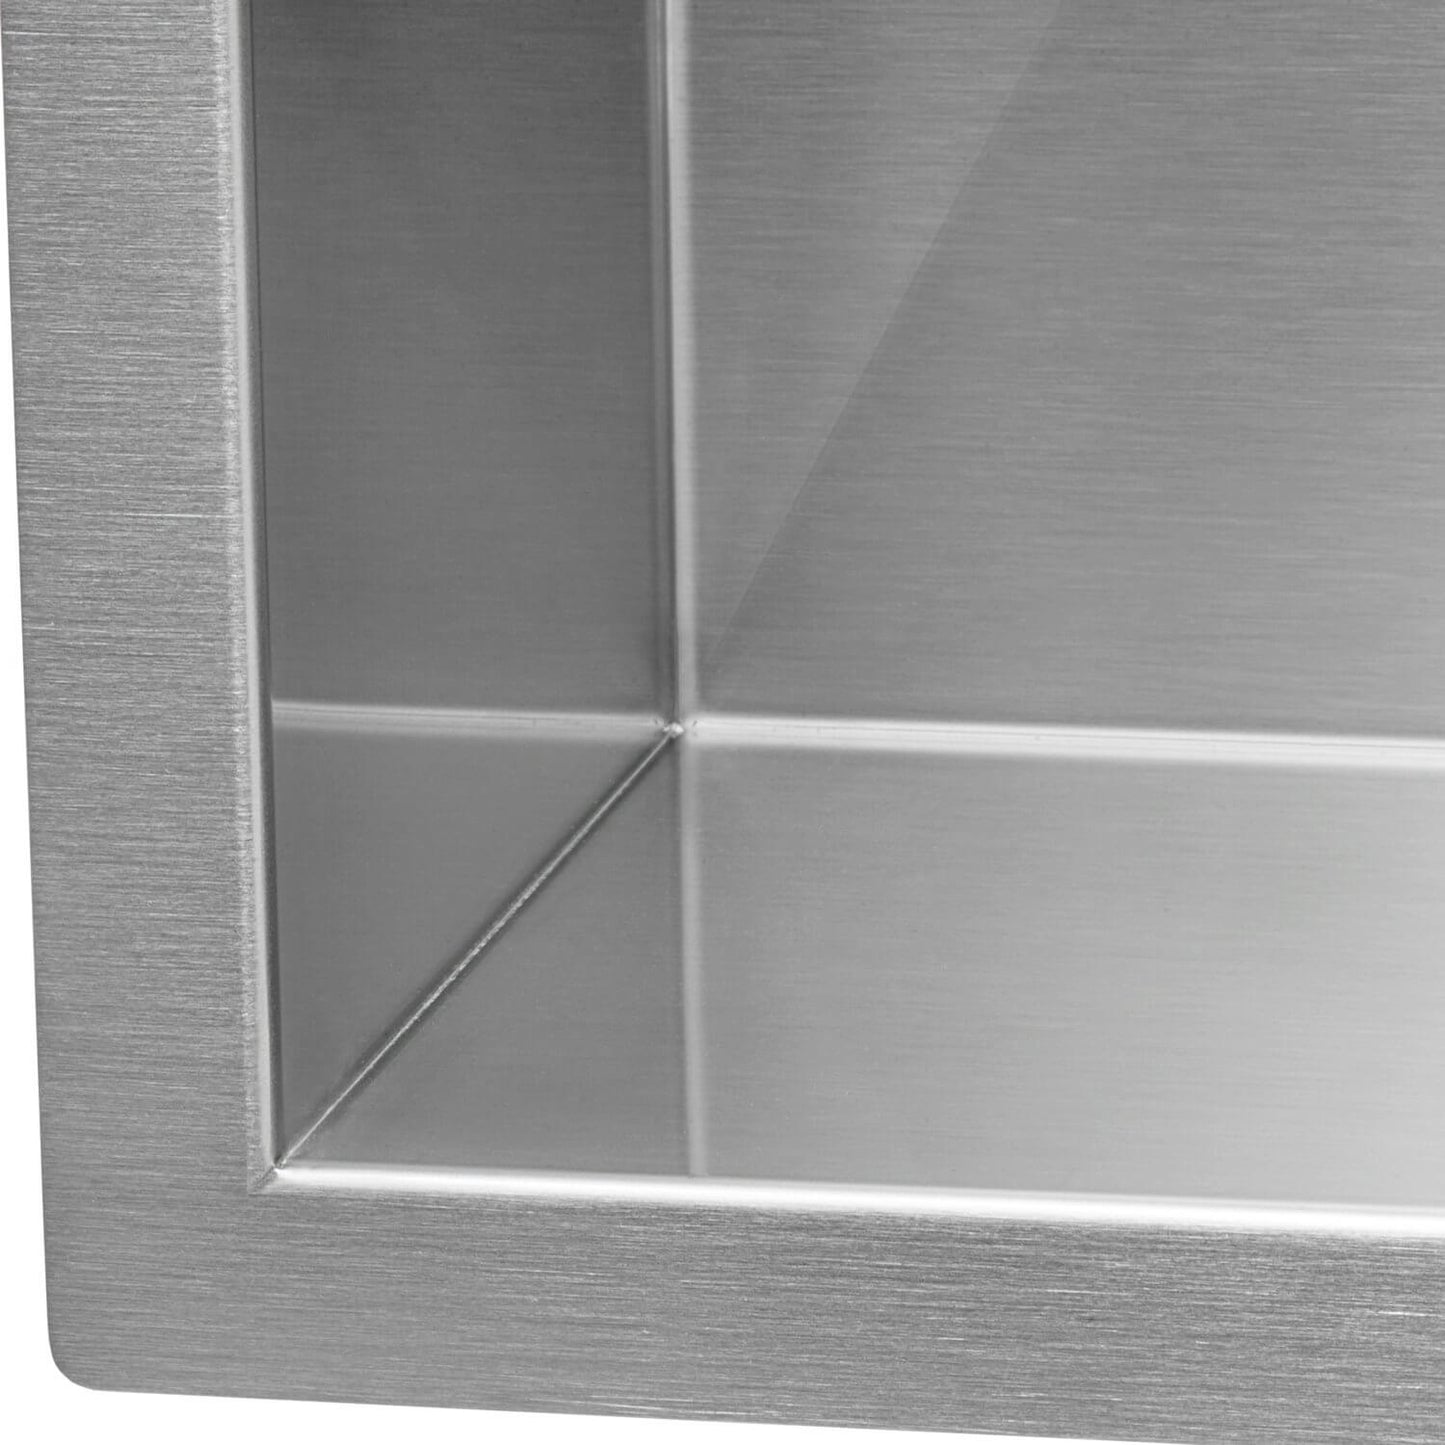 KH-3318-9-S-R0 Handmade Stainless Steel Kitchen Sink